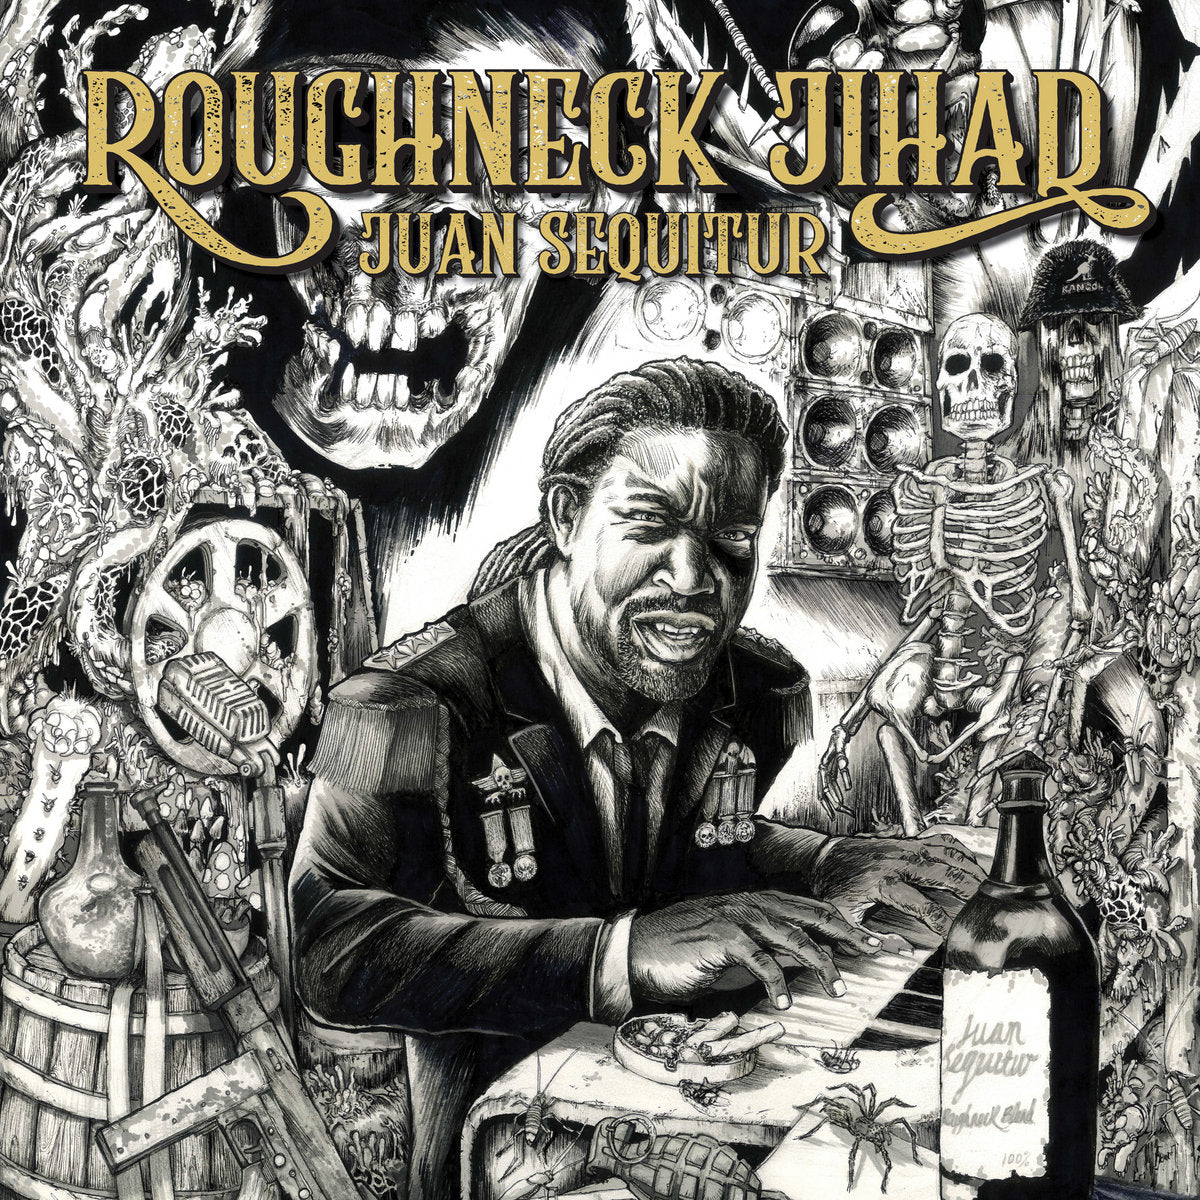 12 inch vinyl - Roughneck Jihad - Juan Sequitur